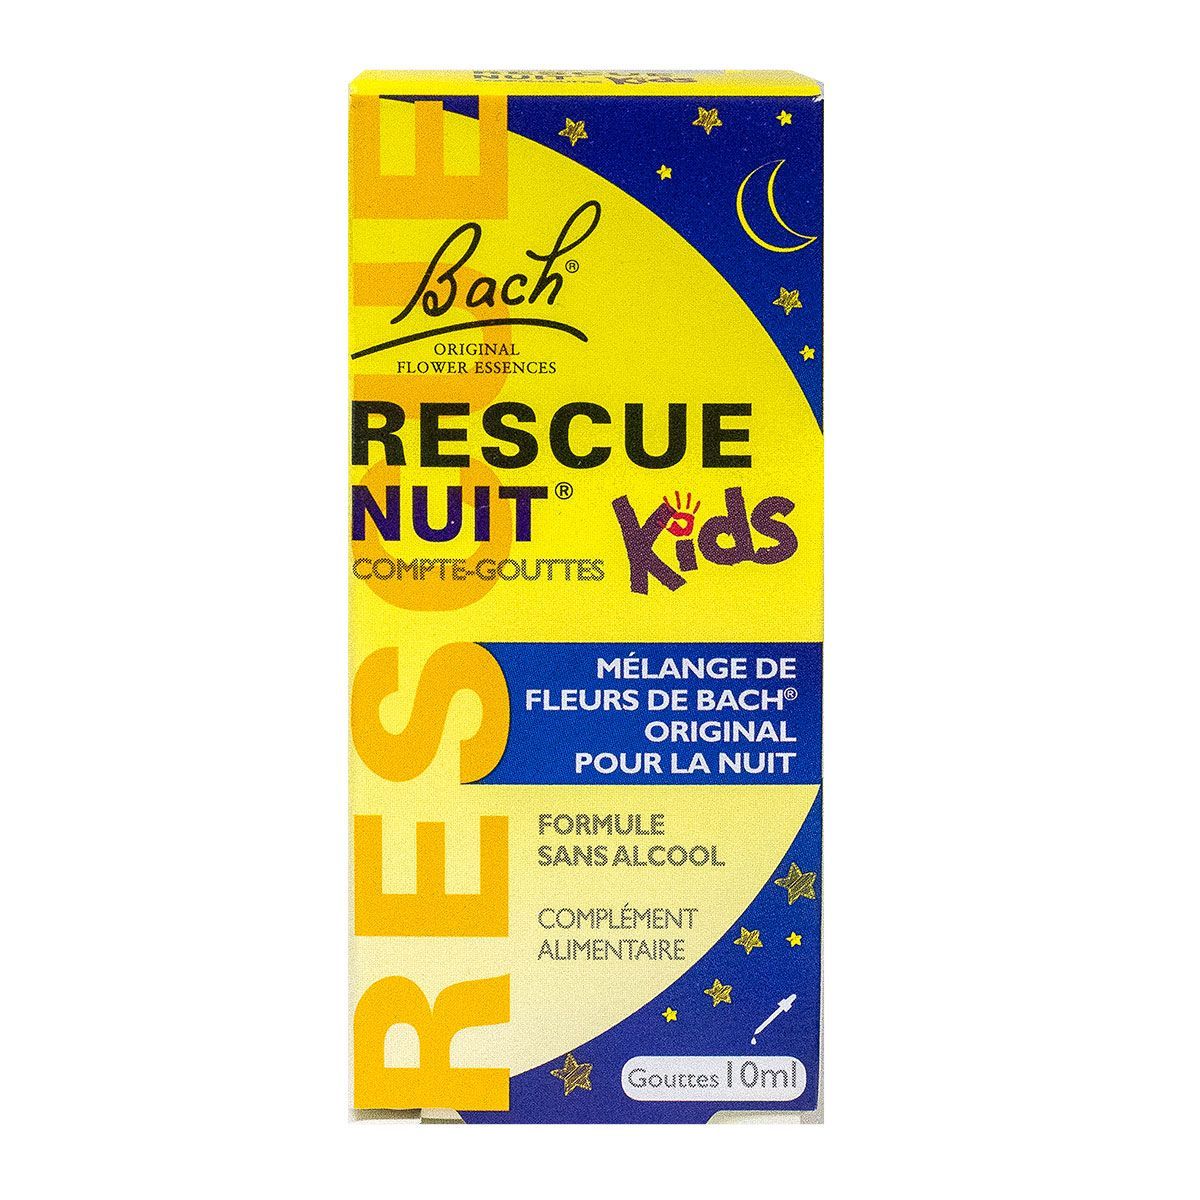 Rescue Nuit Kids 10 ml de Bach Rescue est un complément